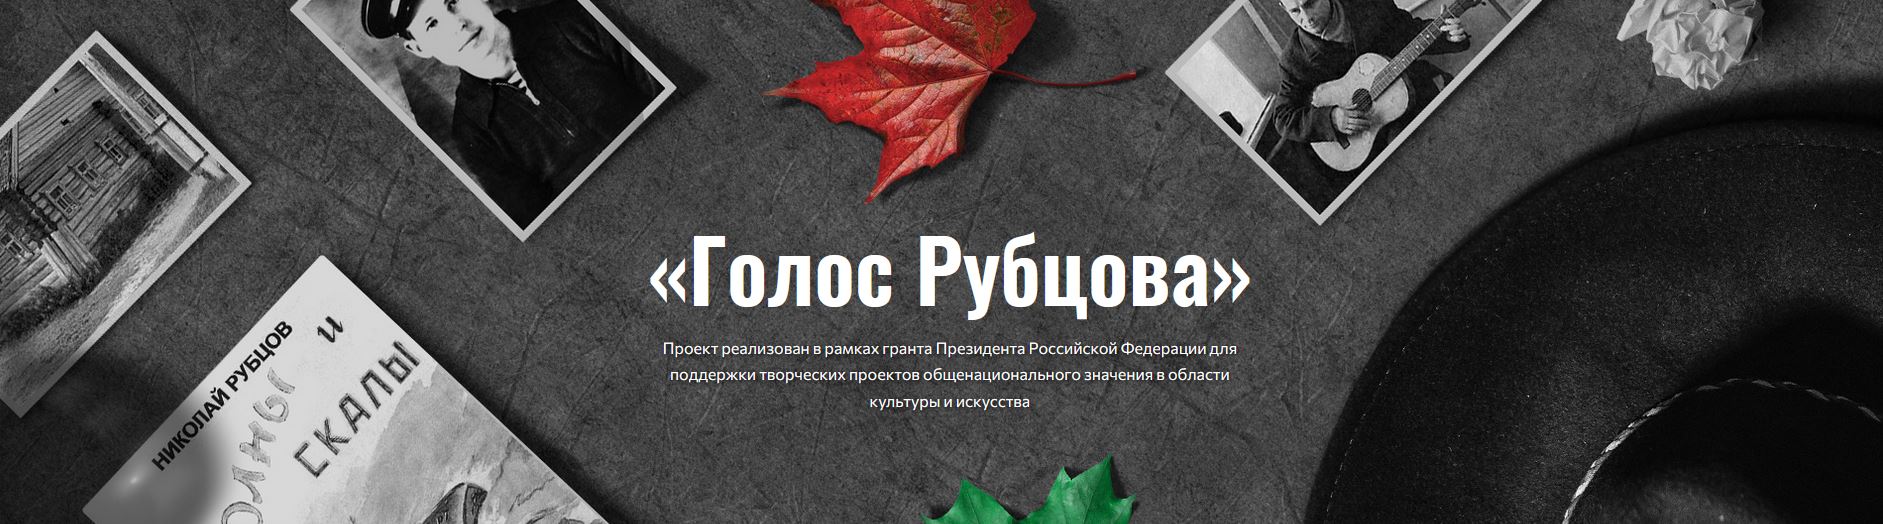 Банер сайта Голос Рубцова